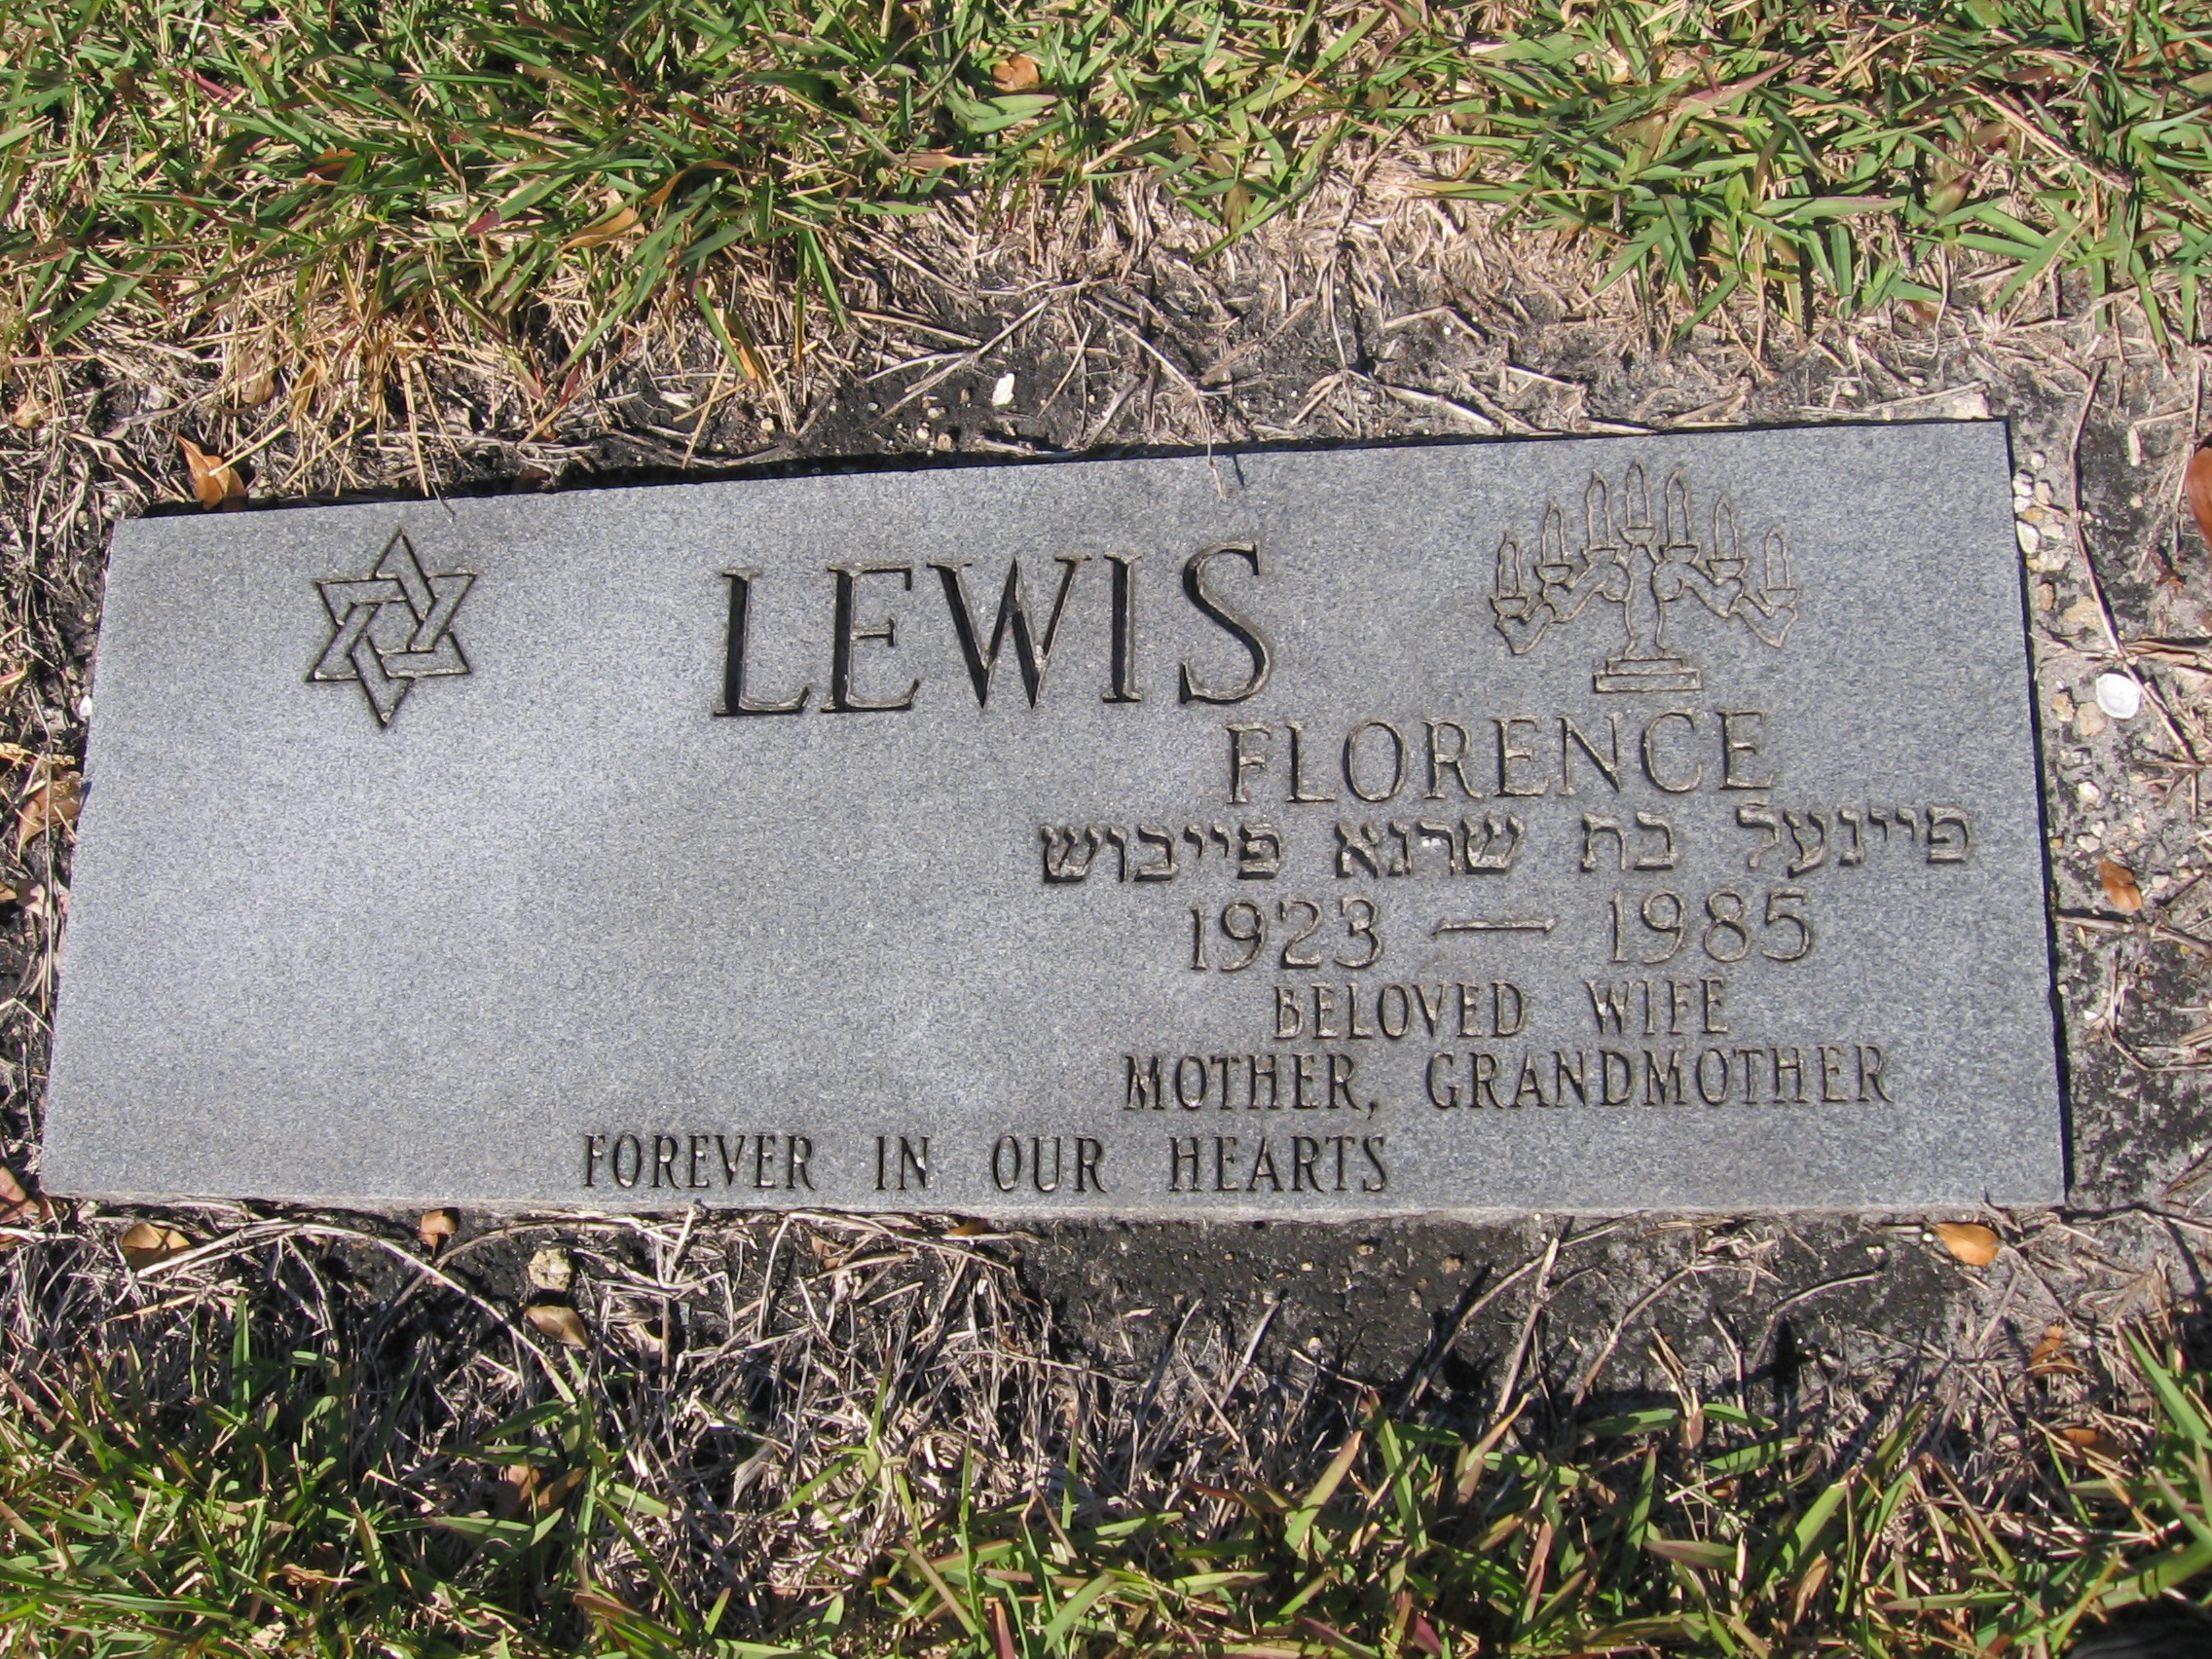 Florence Lewis